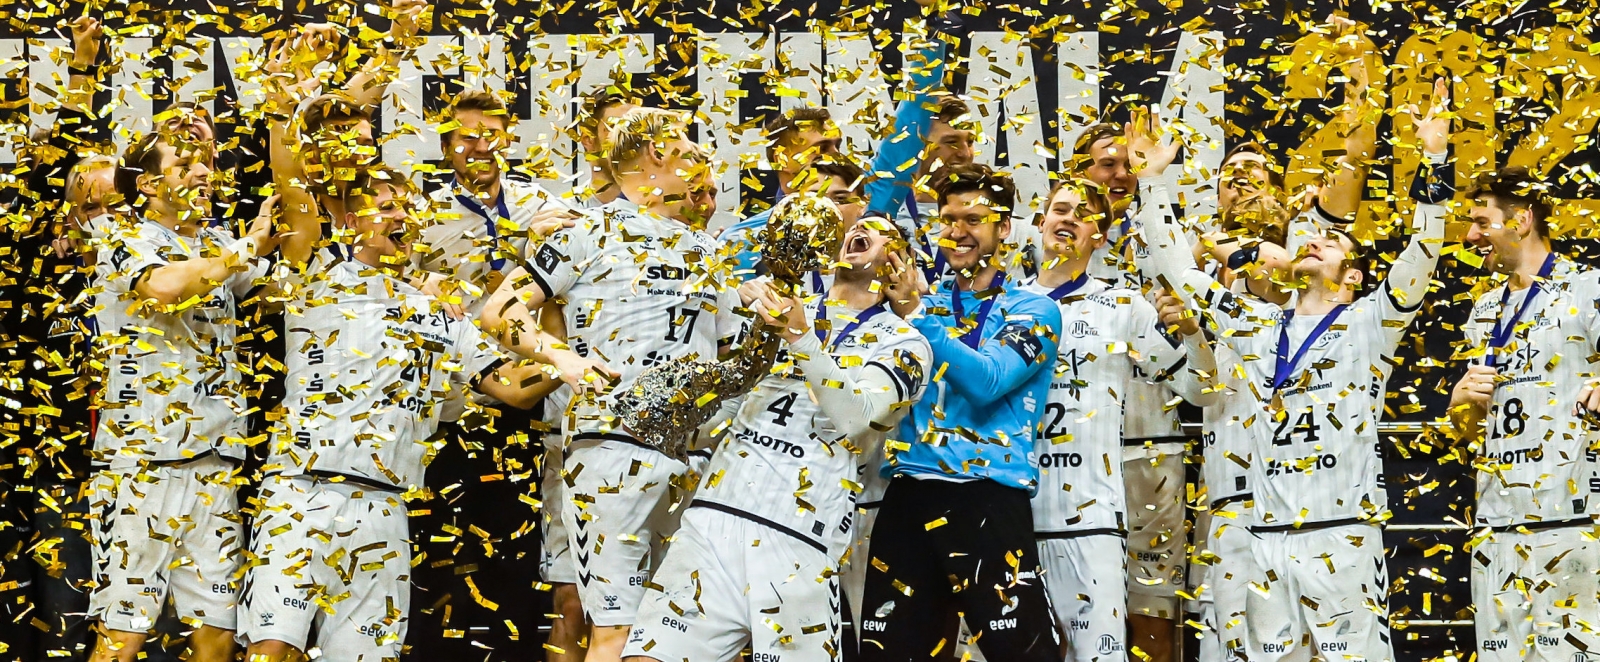 THW Kiel beim jubeln mit dem EHF Pokal 2020 in goldenem Konfettiregen. 